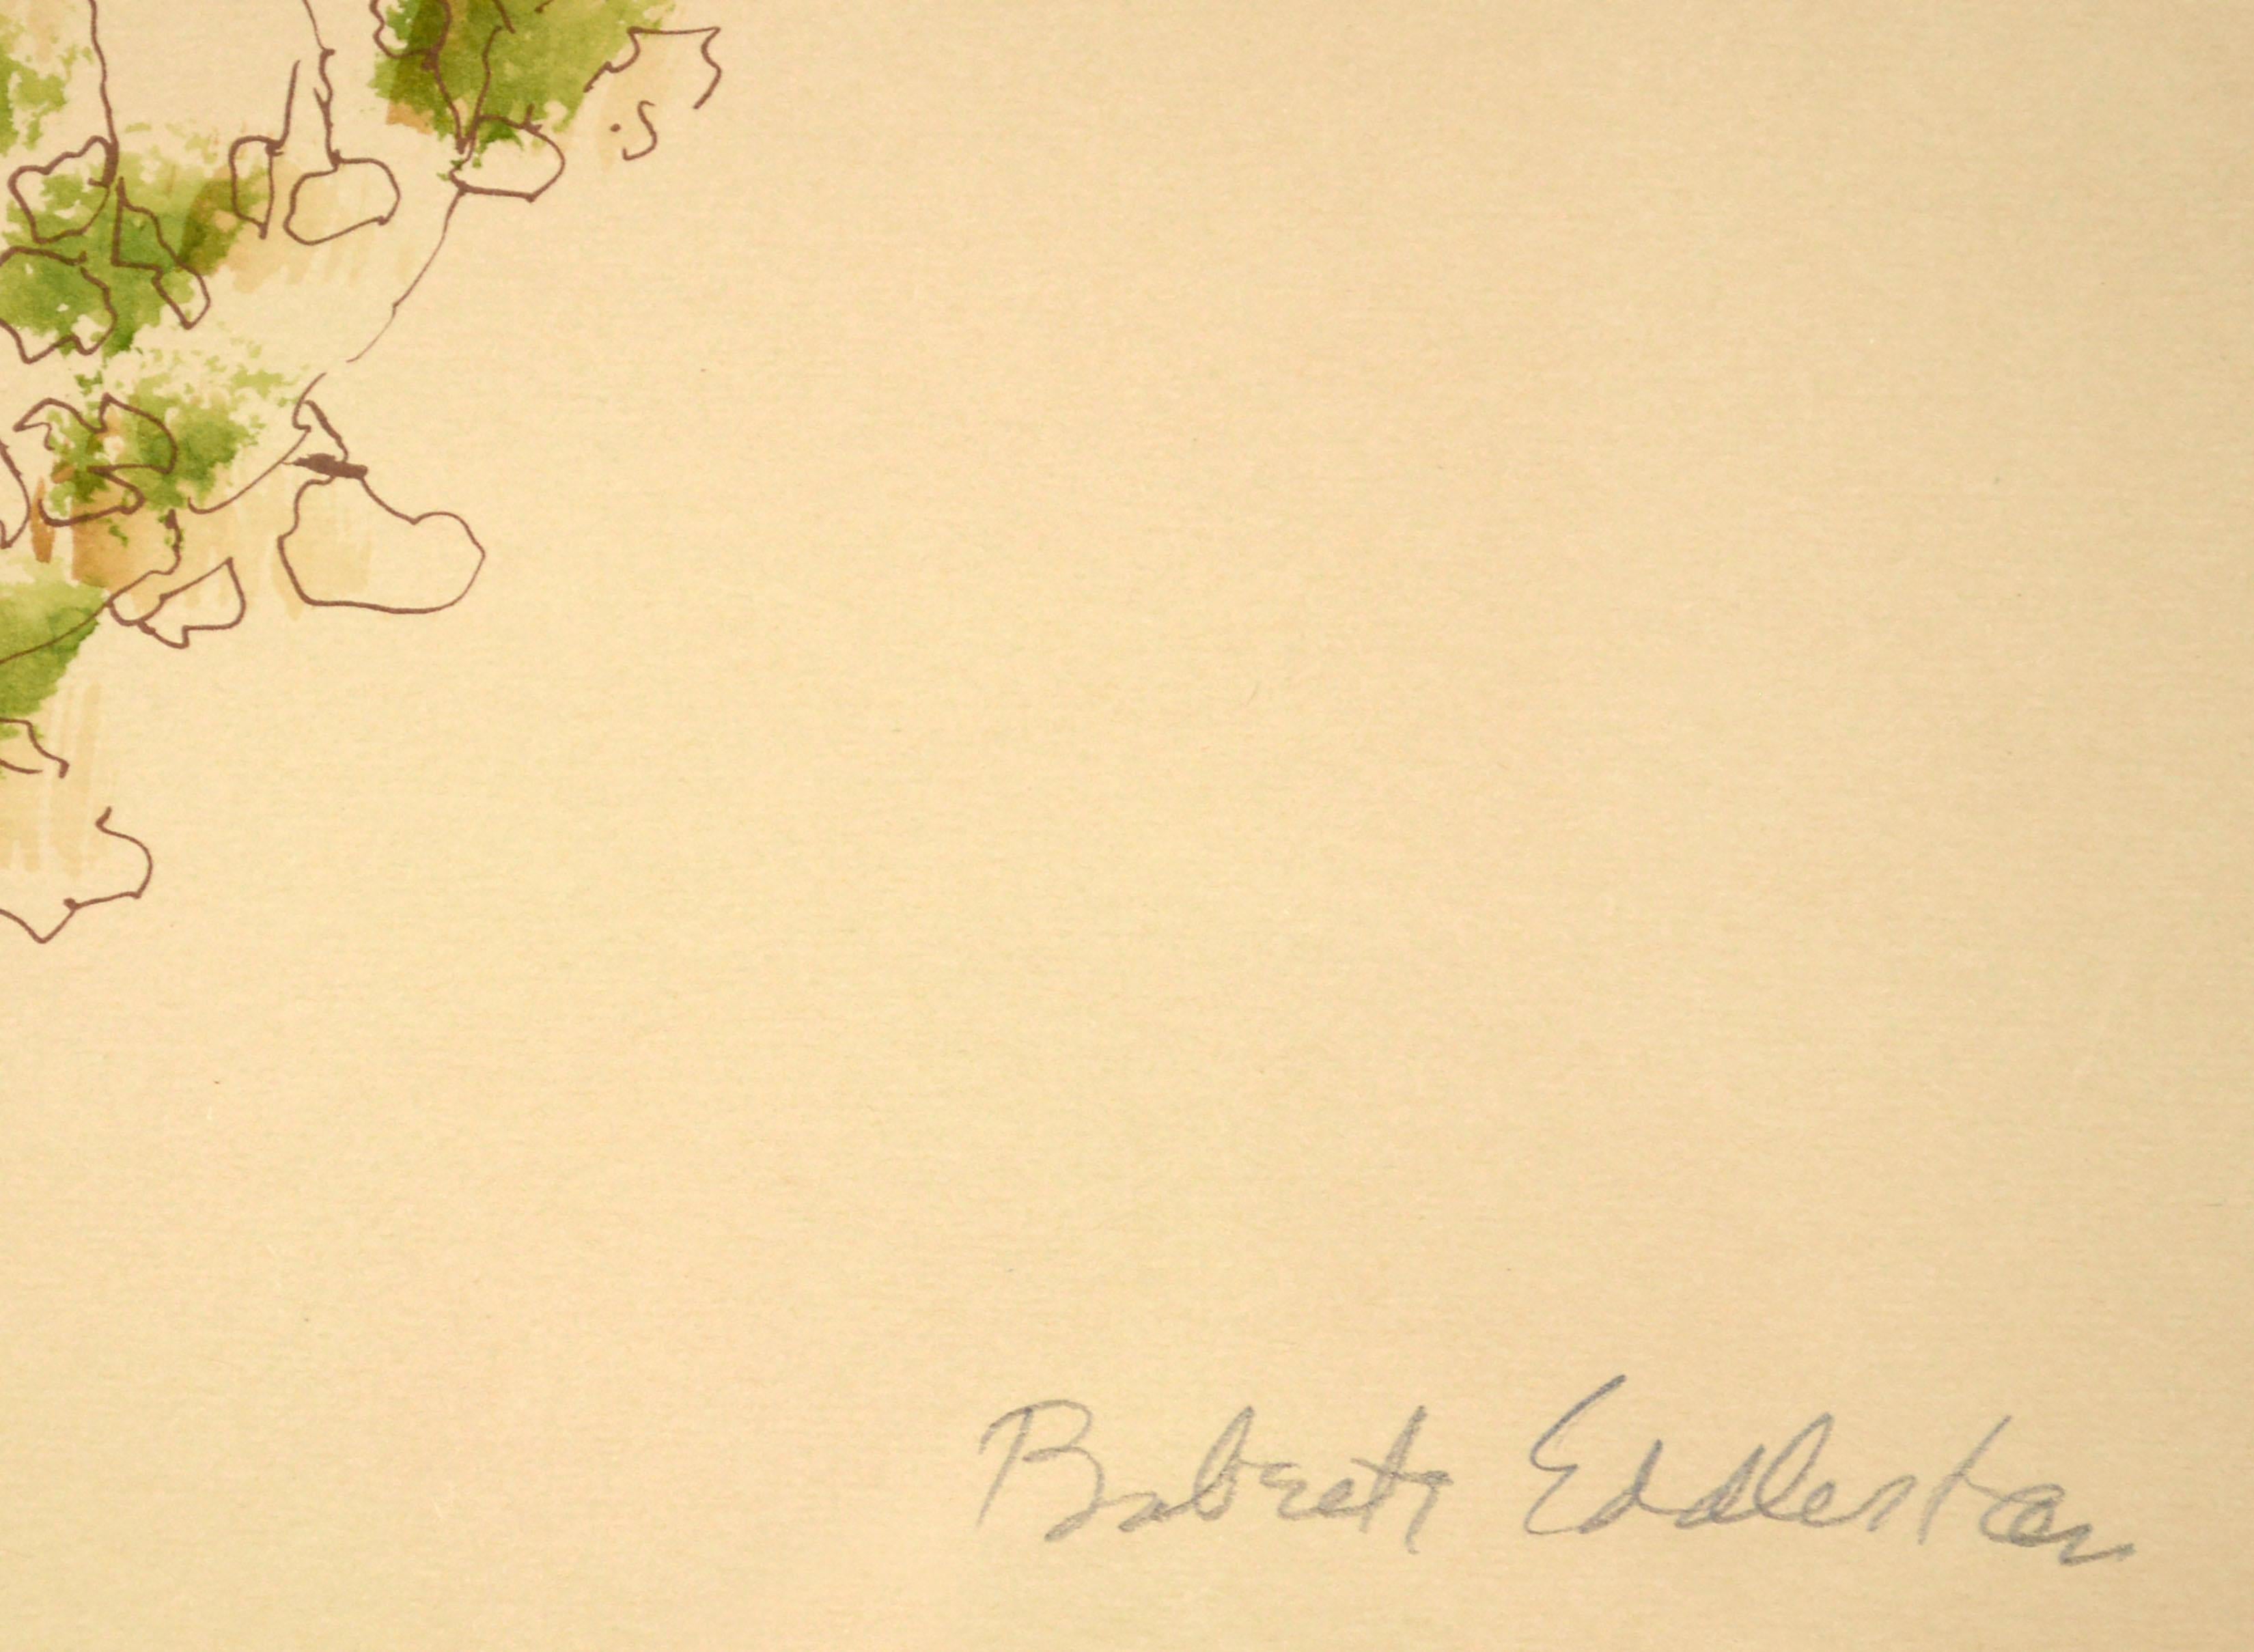 Sérigraphie botanique fantaisiste des années 1970, peinte à la main, représentant une plante, les larmes de bébé, par Babette Joslyn Bauman Eddleston (américaine, 1922-1990). Cette sérigraphie en édition limitée comporte des touches de couleur